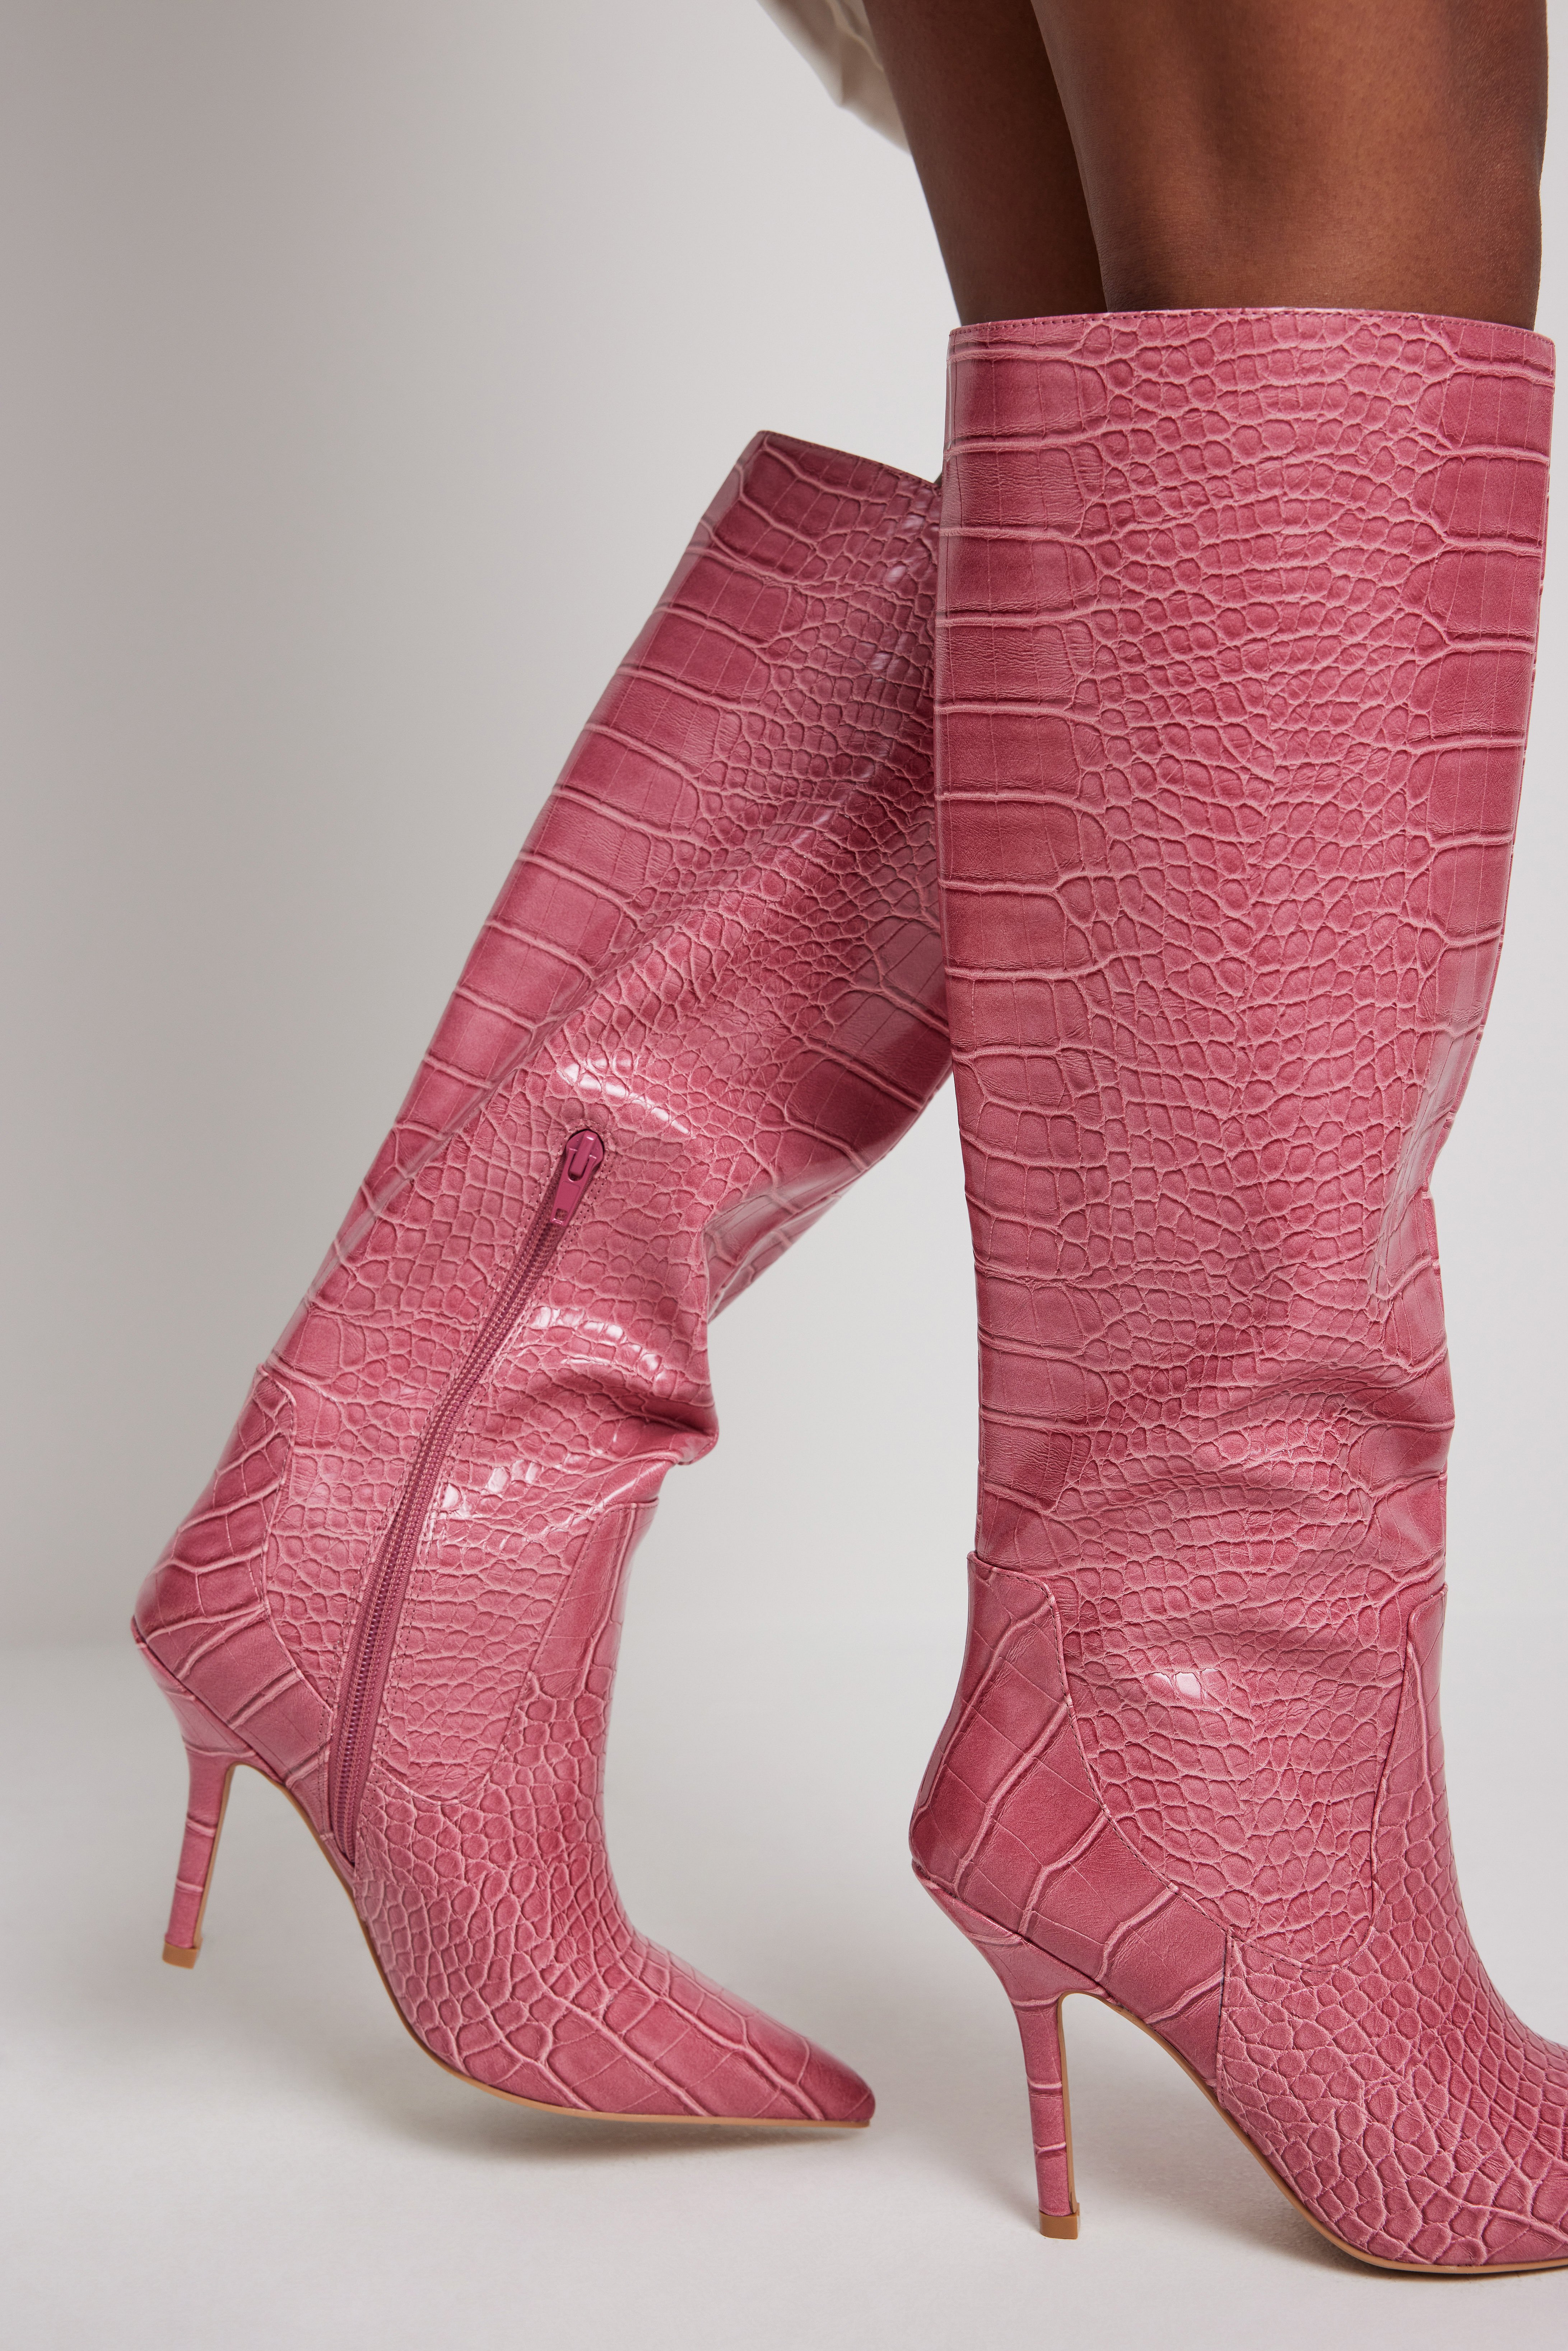 Pink Stiletto Shaft Boots